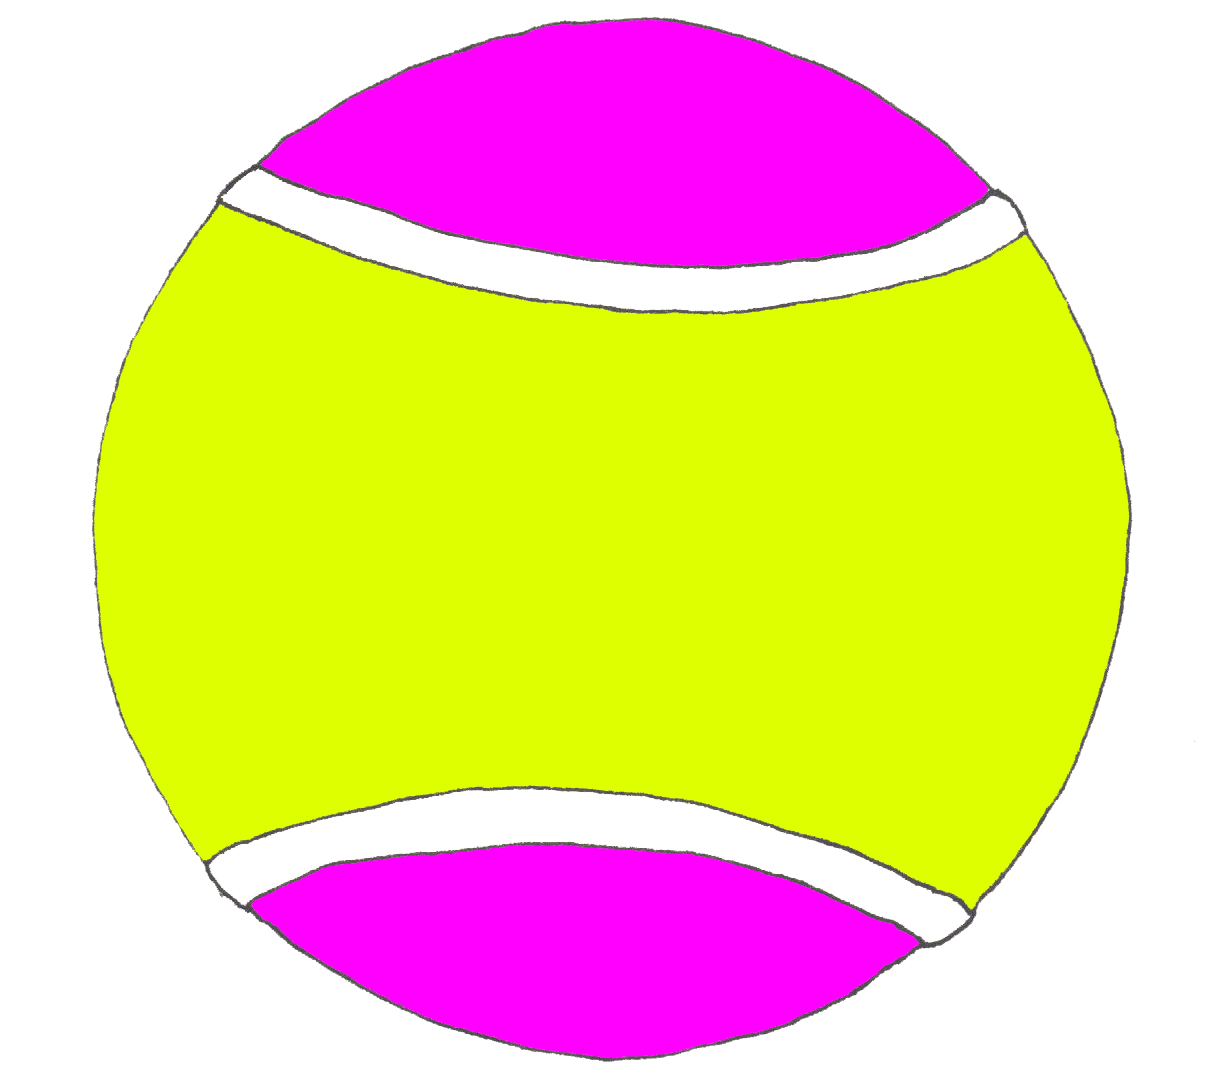 clipart ball tennis ball